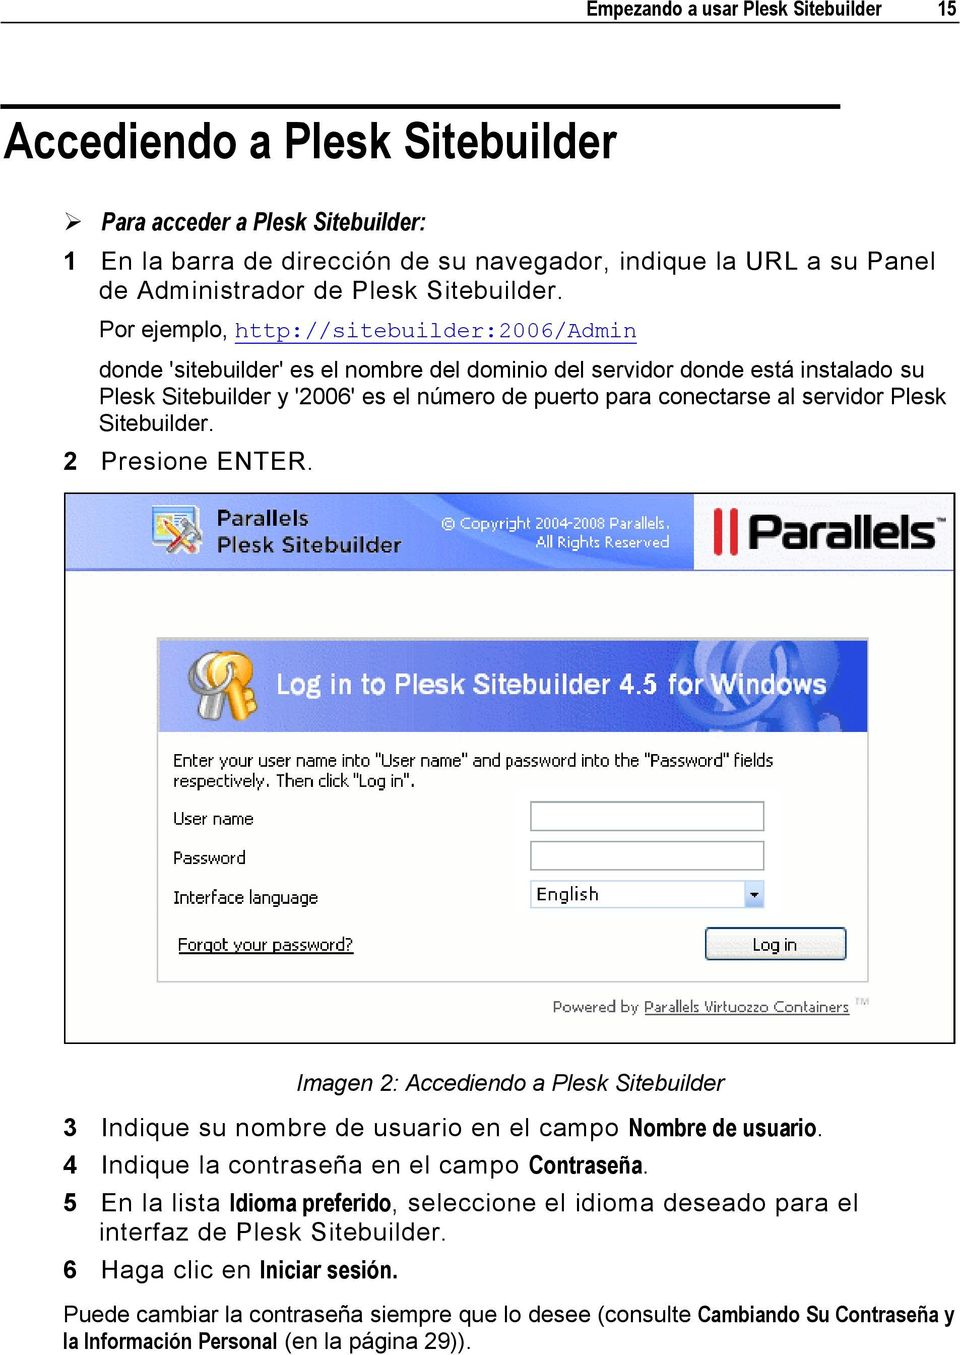 Por ejemplo, http://sitebuilder:2006/admin donde 'sitebuilder' es el nombre del dominio del servidor donde está instalado su Plesk Sitebuilder y '2006' es el número de puerto para conectarse al